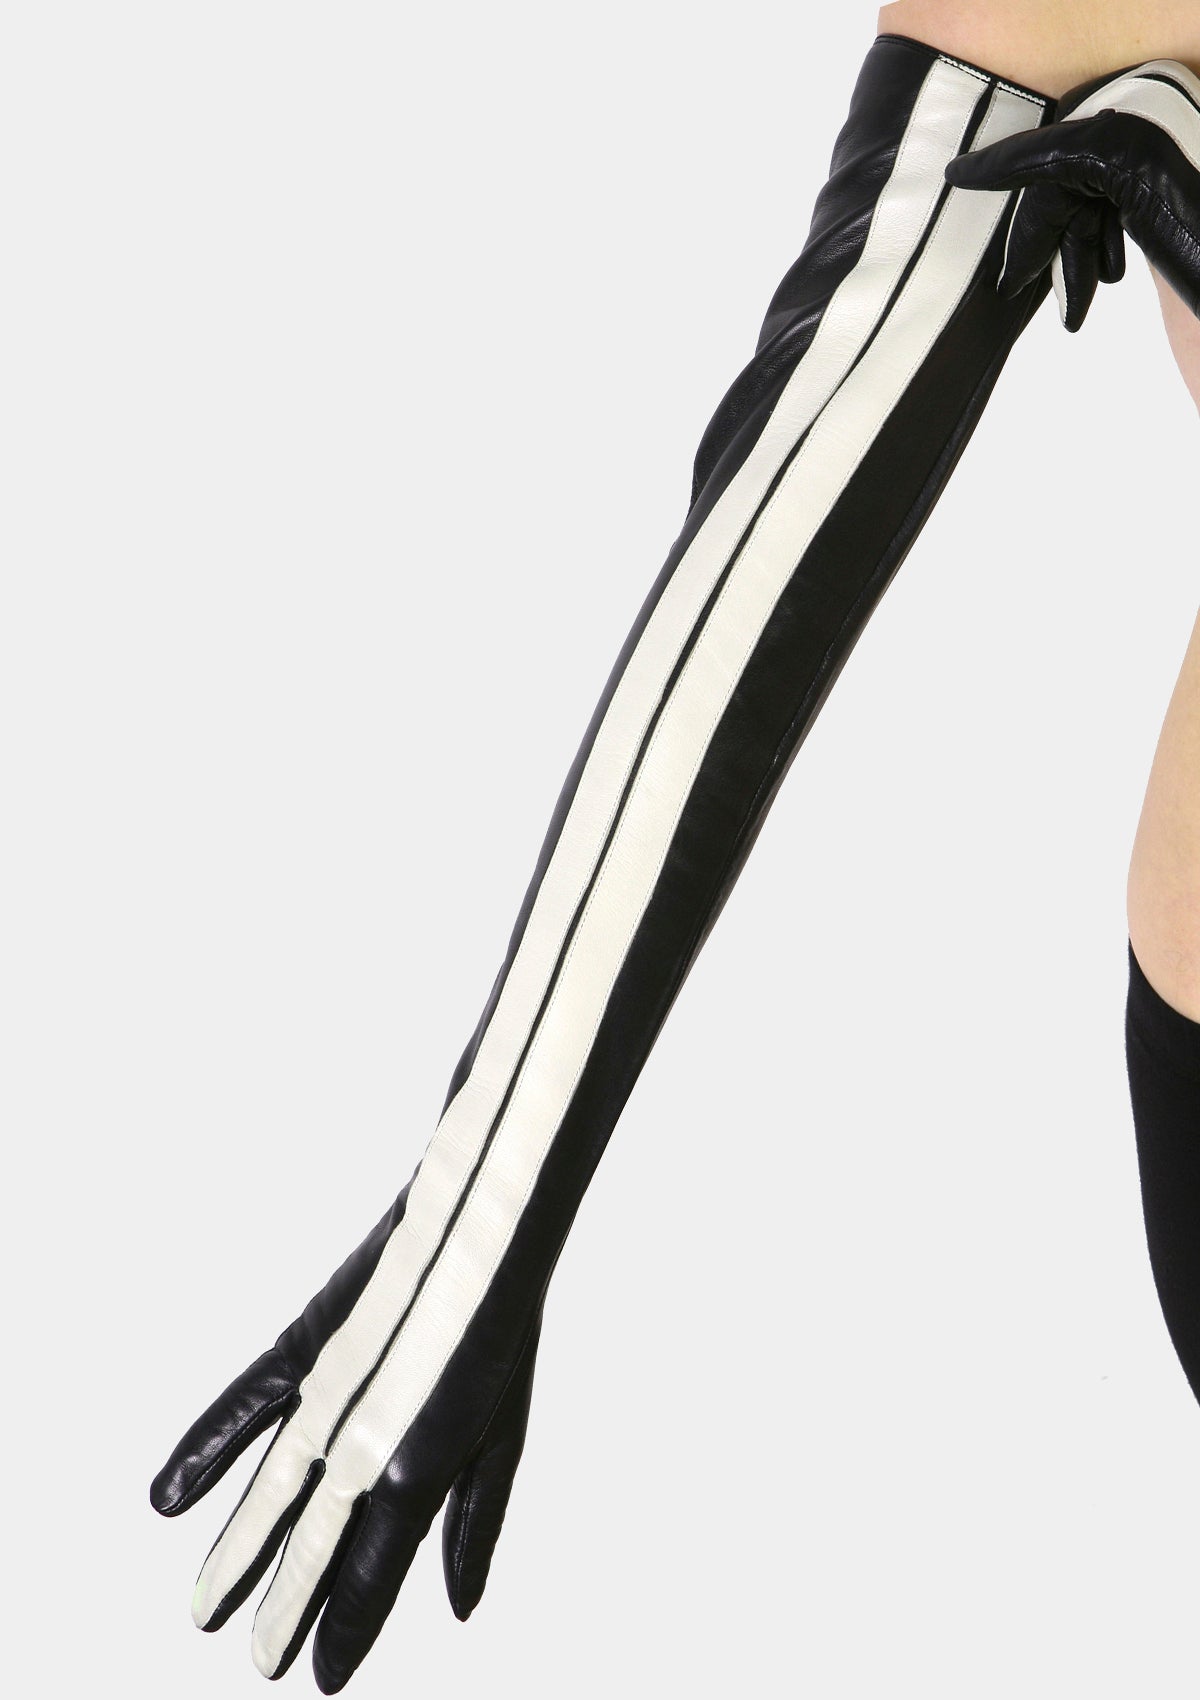 Racing stripe long gloves for women custom white black